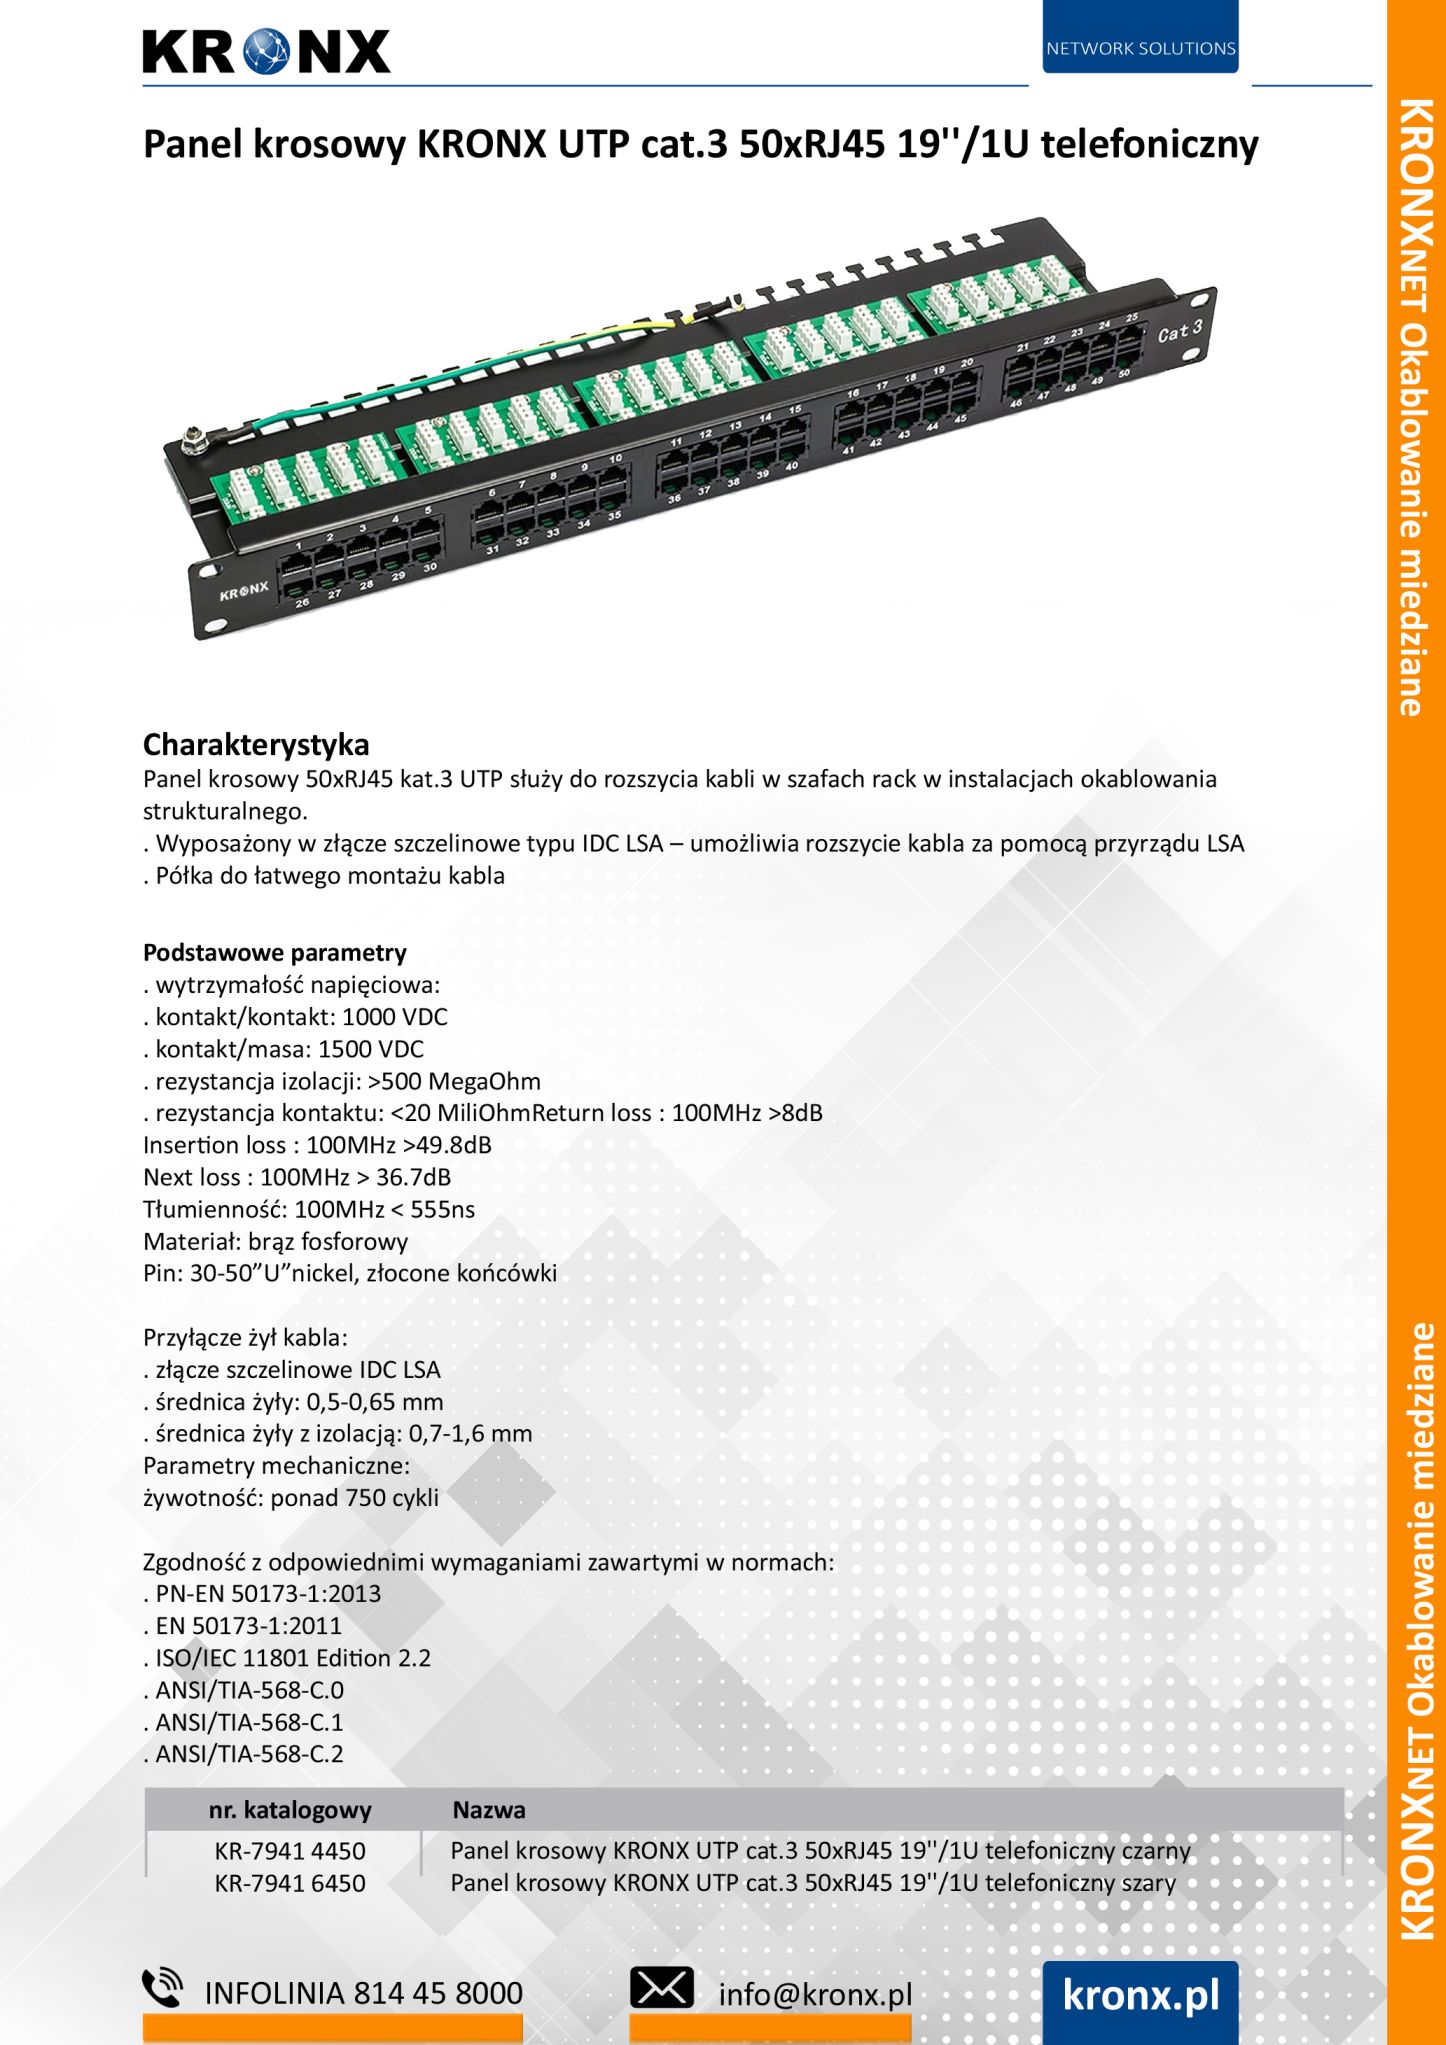 Panel krosowy KRONX UTP cat.3 50xRJ45 191U telefoniczny min